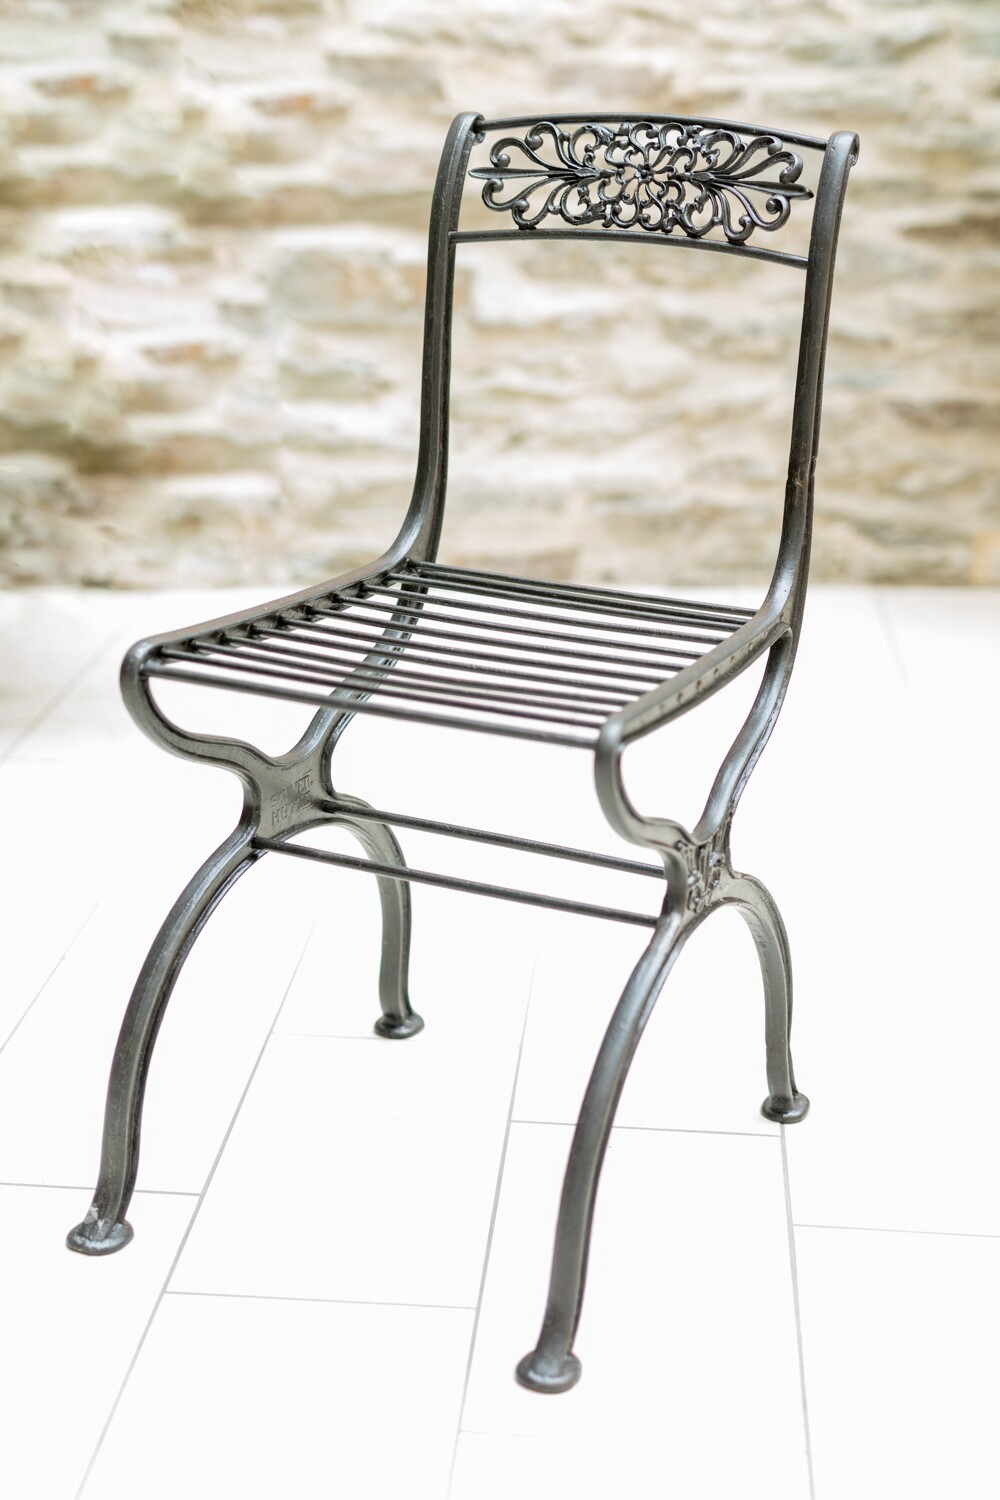 Schinkel-Stuhl ohne Armlehne "SAYNER HÜTTE" (Stiftung Sayner Hütte, Rheinisches Eisenkunstguss-Museum CC BY-NC-SA)